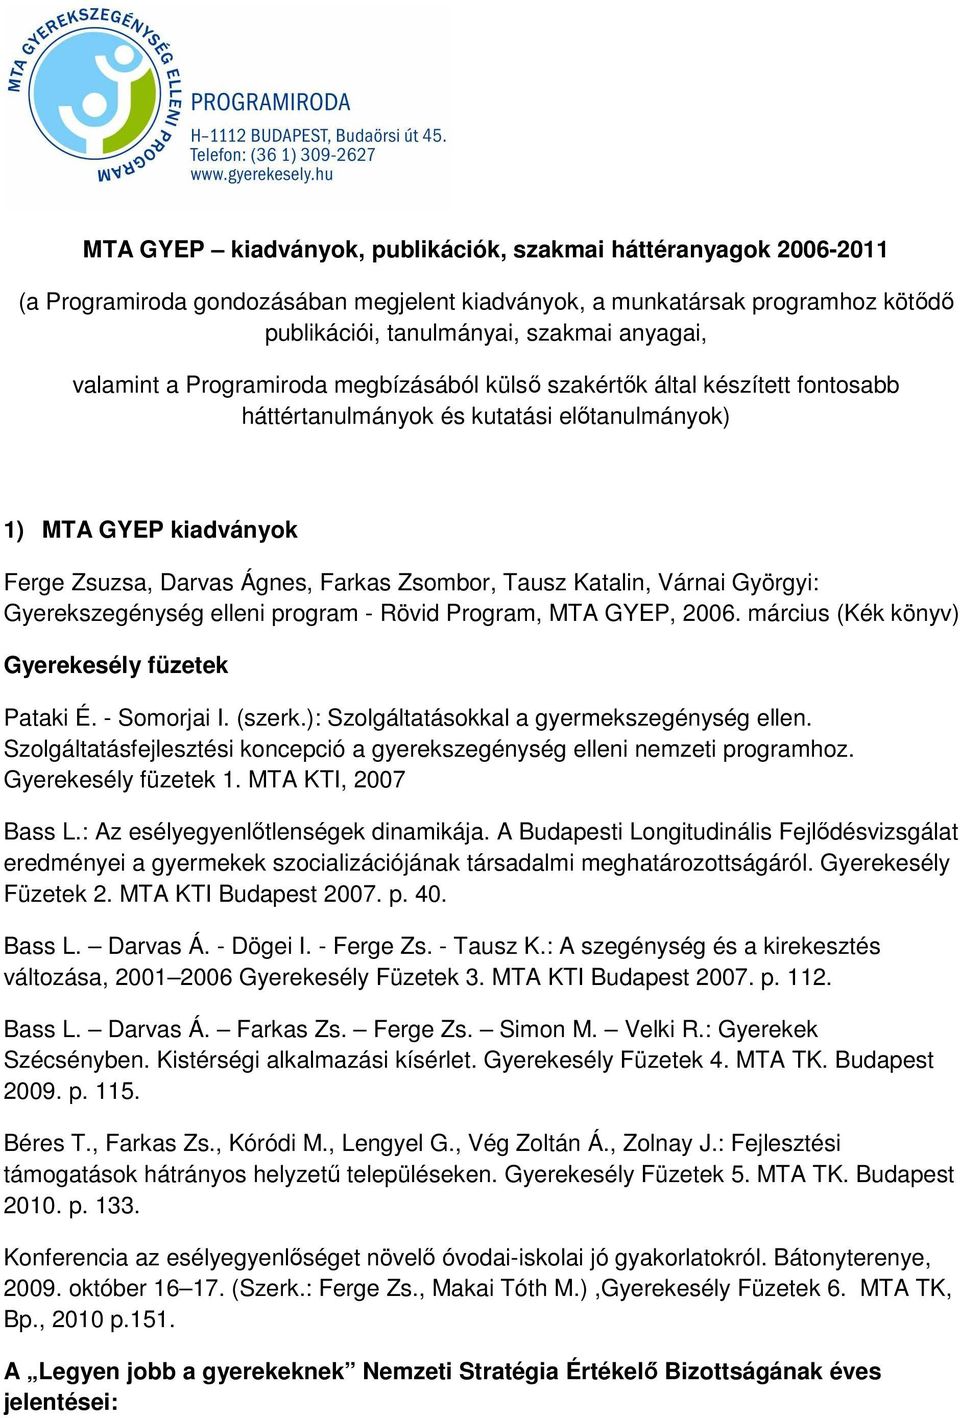 MTA GYEP kiadványok, publikációk, szakmai háttéranyagok - PDF Ingyenes  letöltés